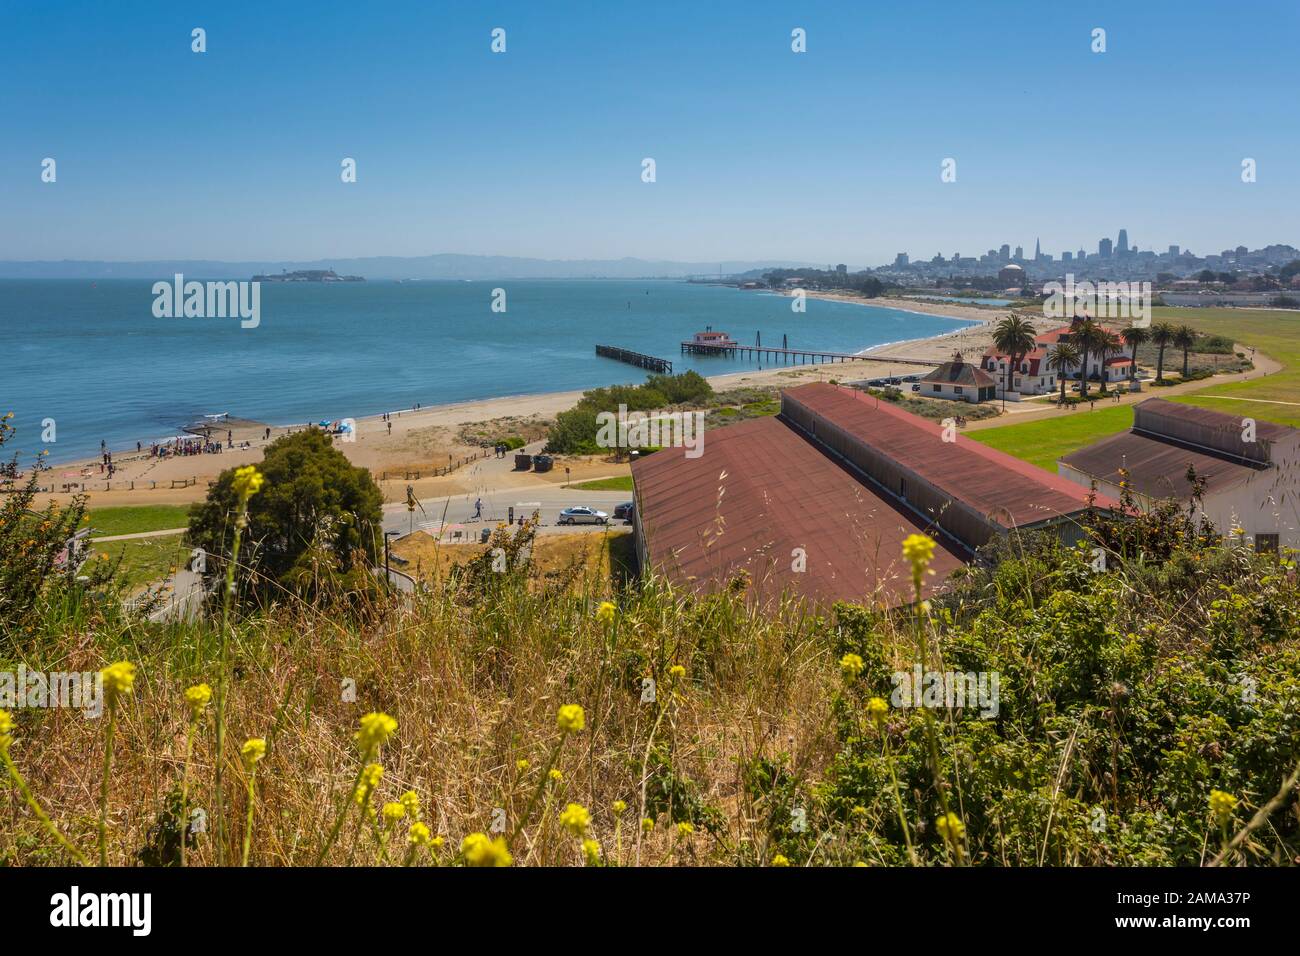 Vue sur la zone de pique-nique de West Bluff et la ville en toile de fond, San Francisco, Californie, États-Unis, Amérique du Nord Banque D'Images